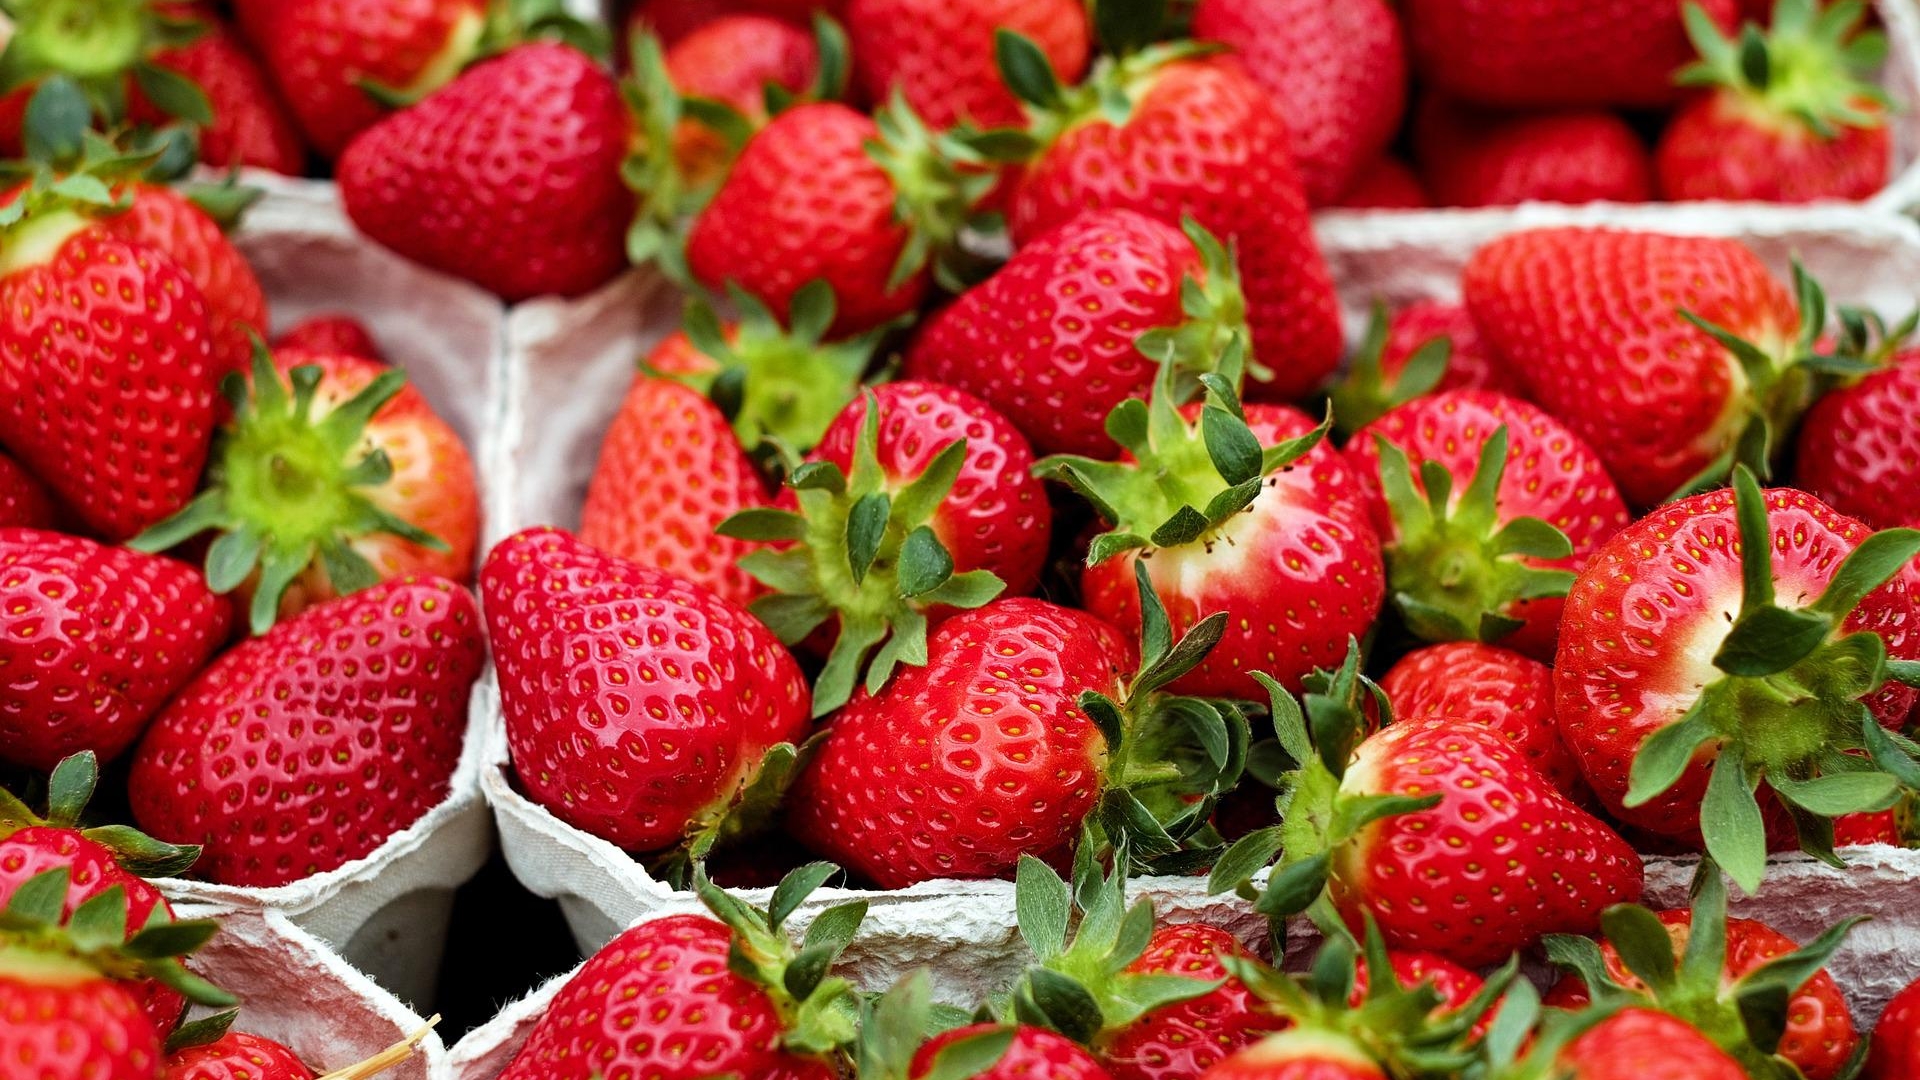 strawberries-gec6fe4fda_1920 aardbei